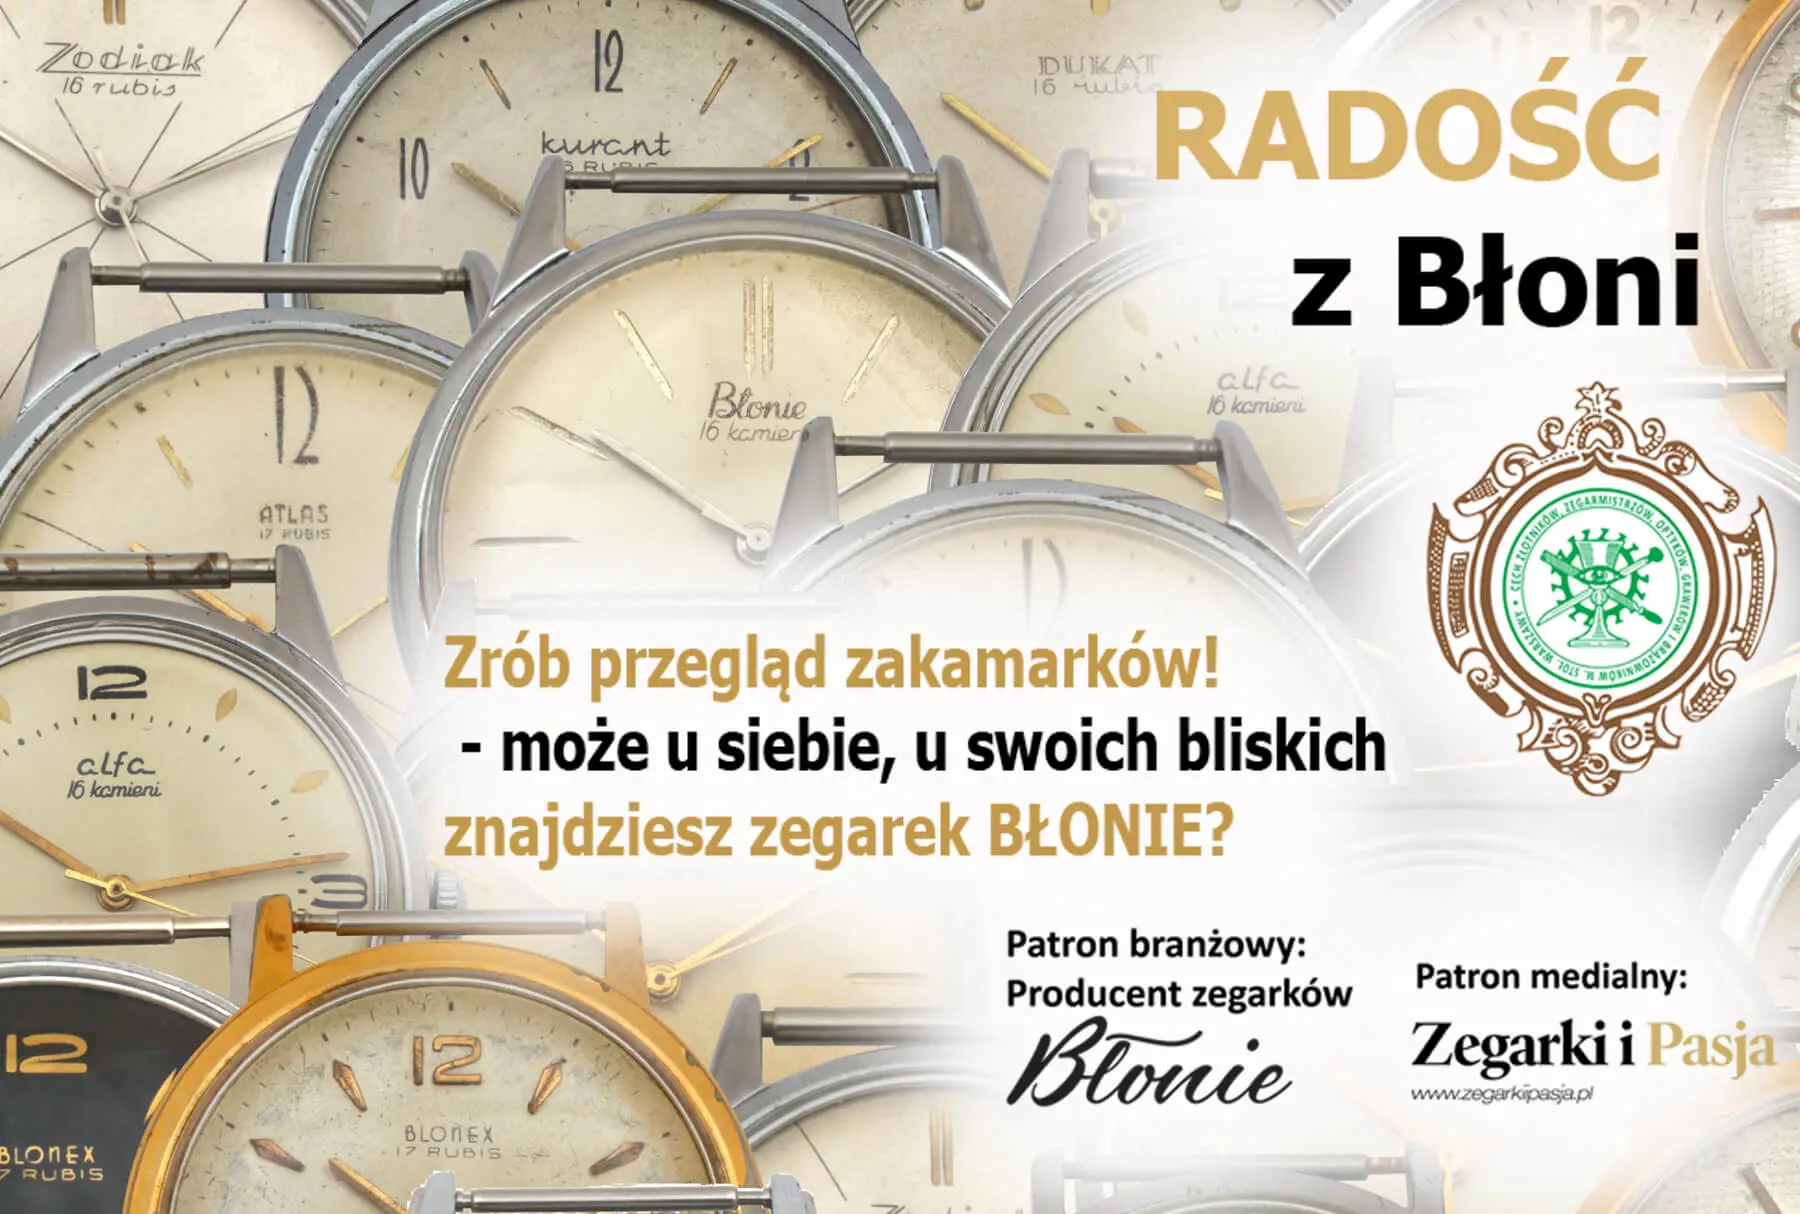 Radość z Błoni. Ciekawa aktywność sekcji zegarmistrzów warszawskiego cechu